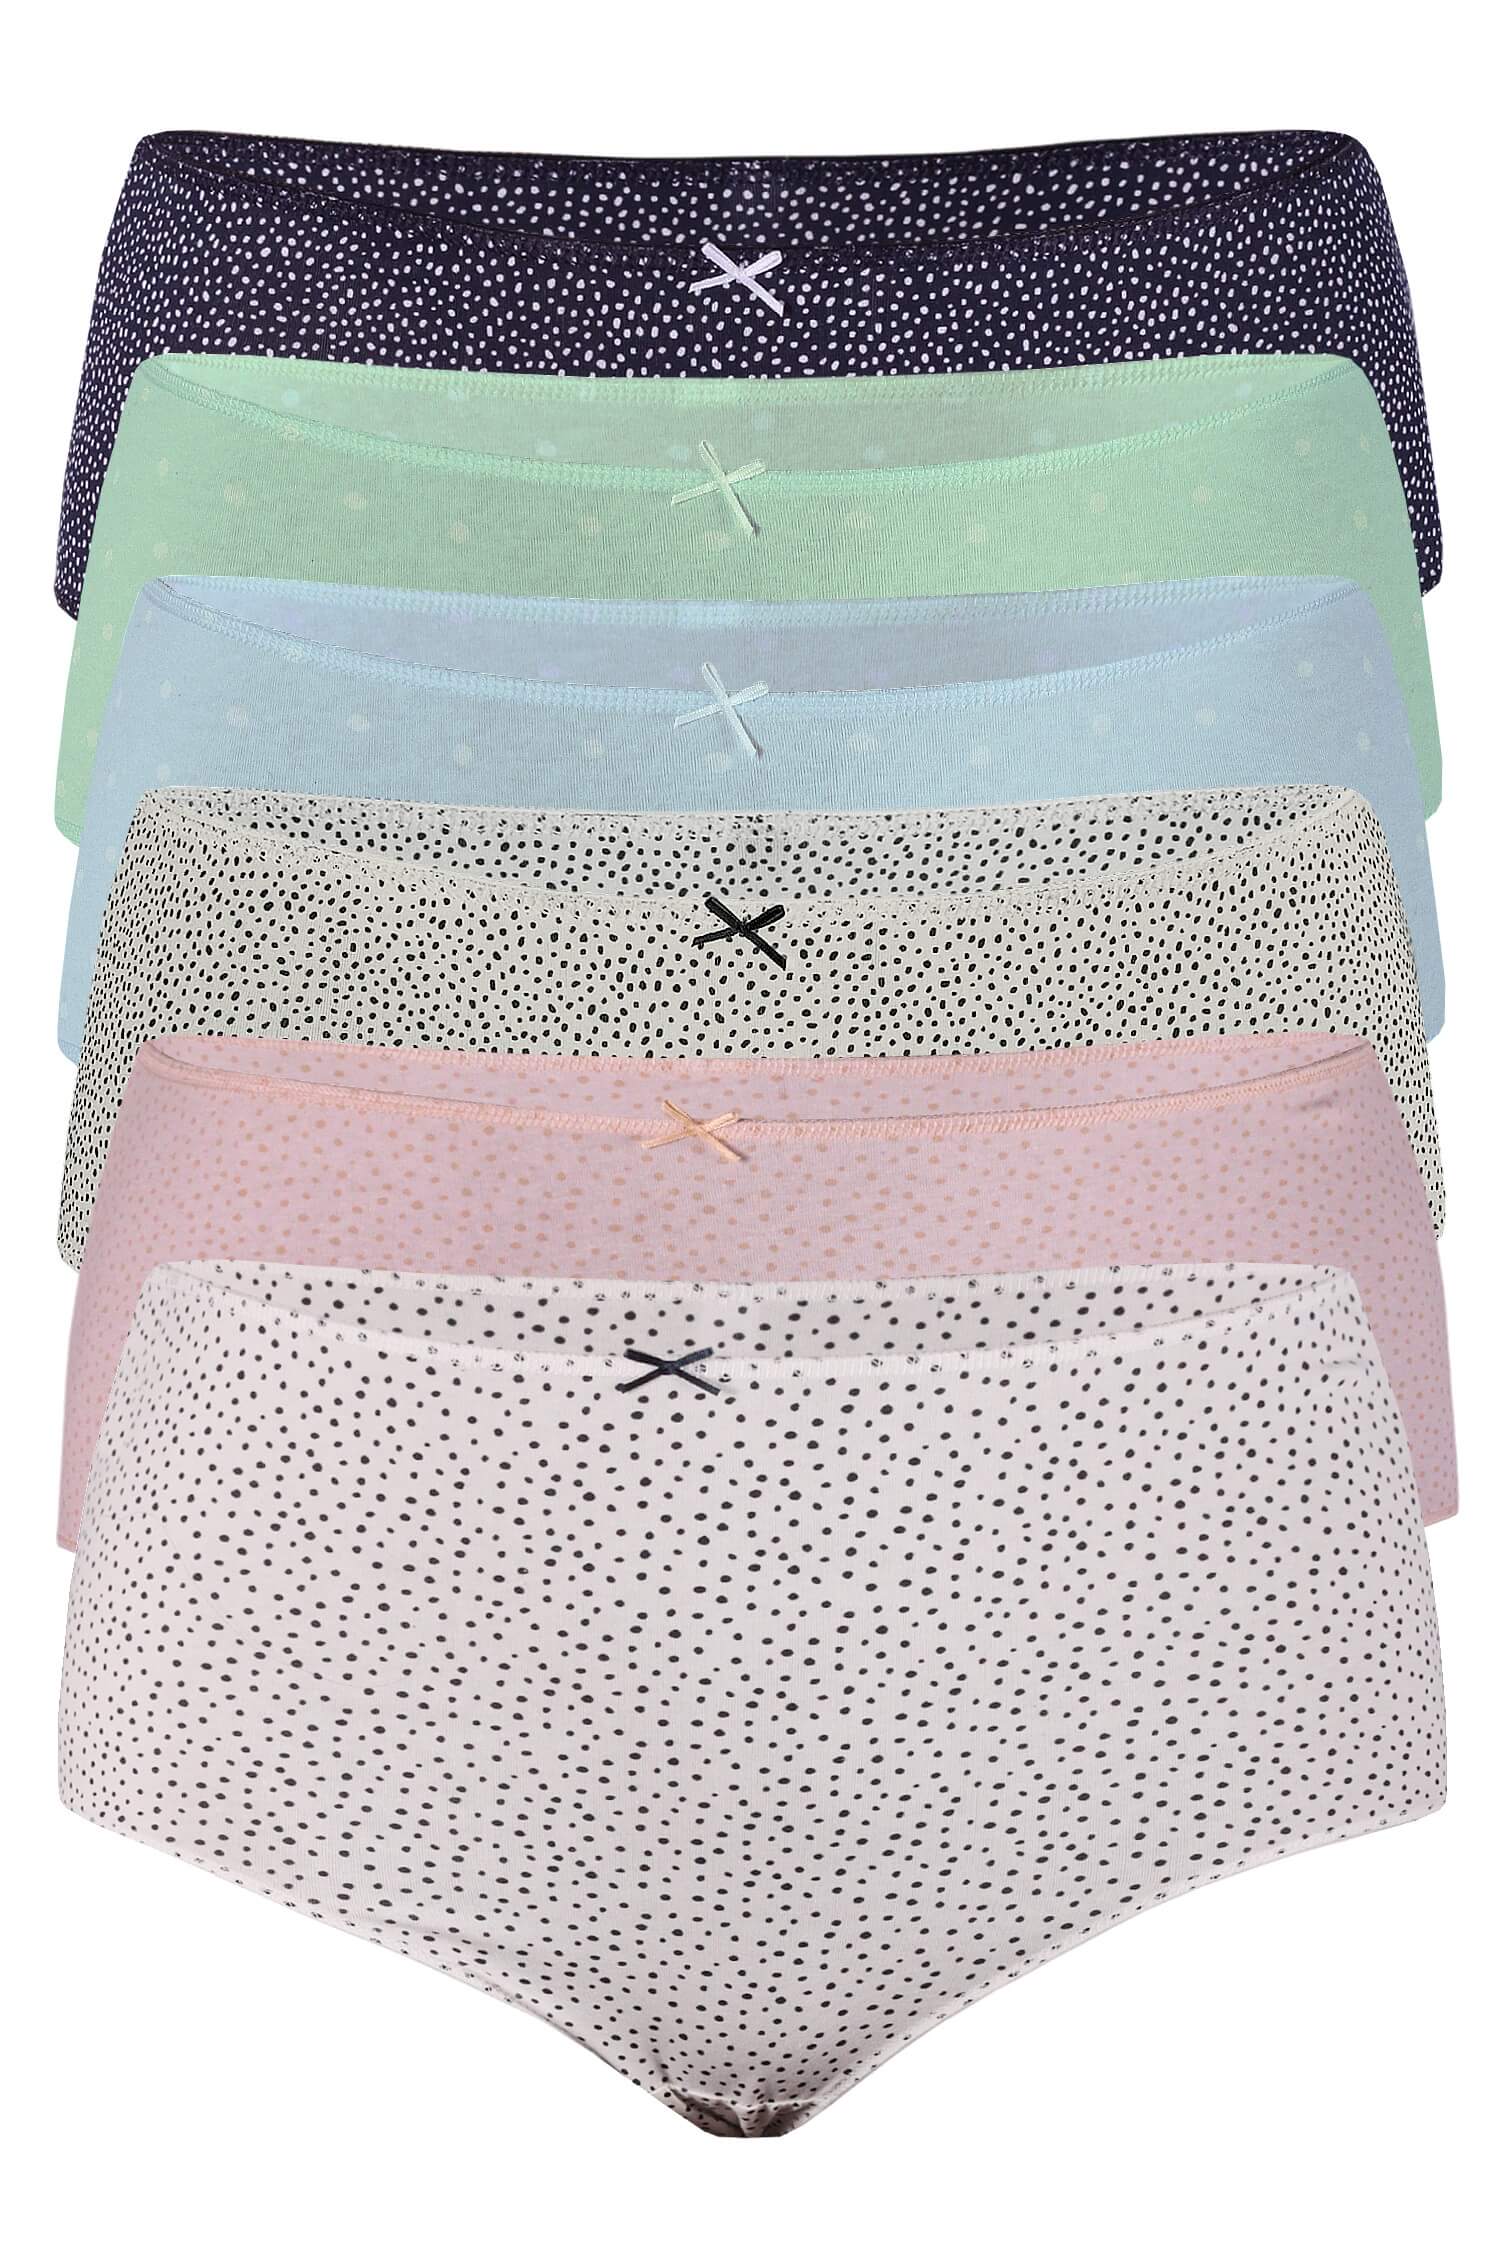 Cecilka bavlněné kalhotky puntík - 3bal 4XL vícebarevná